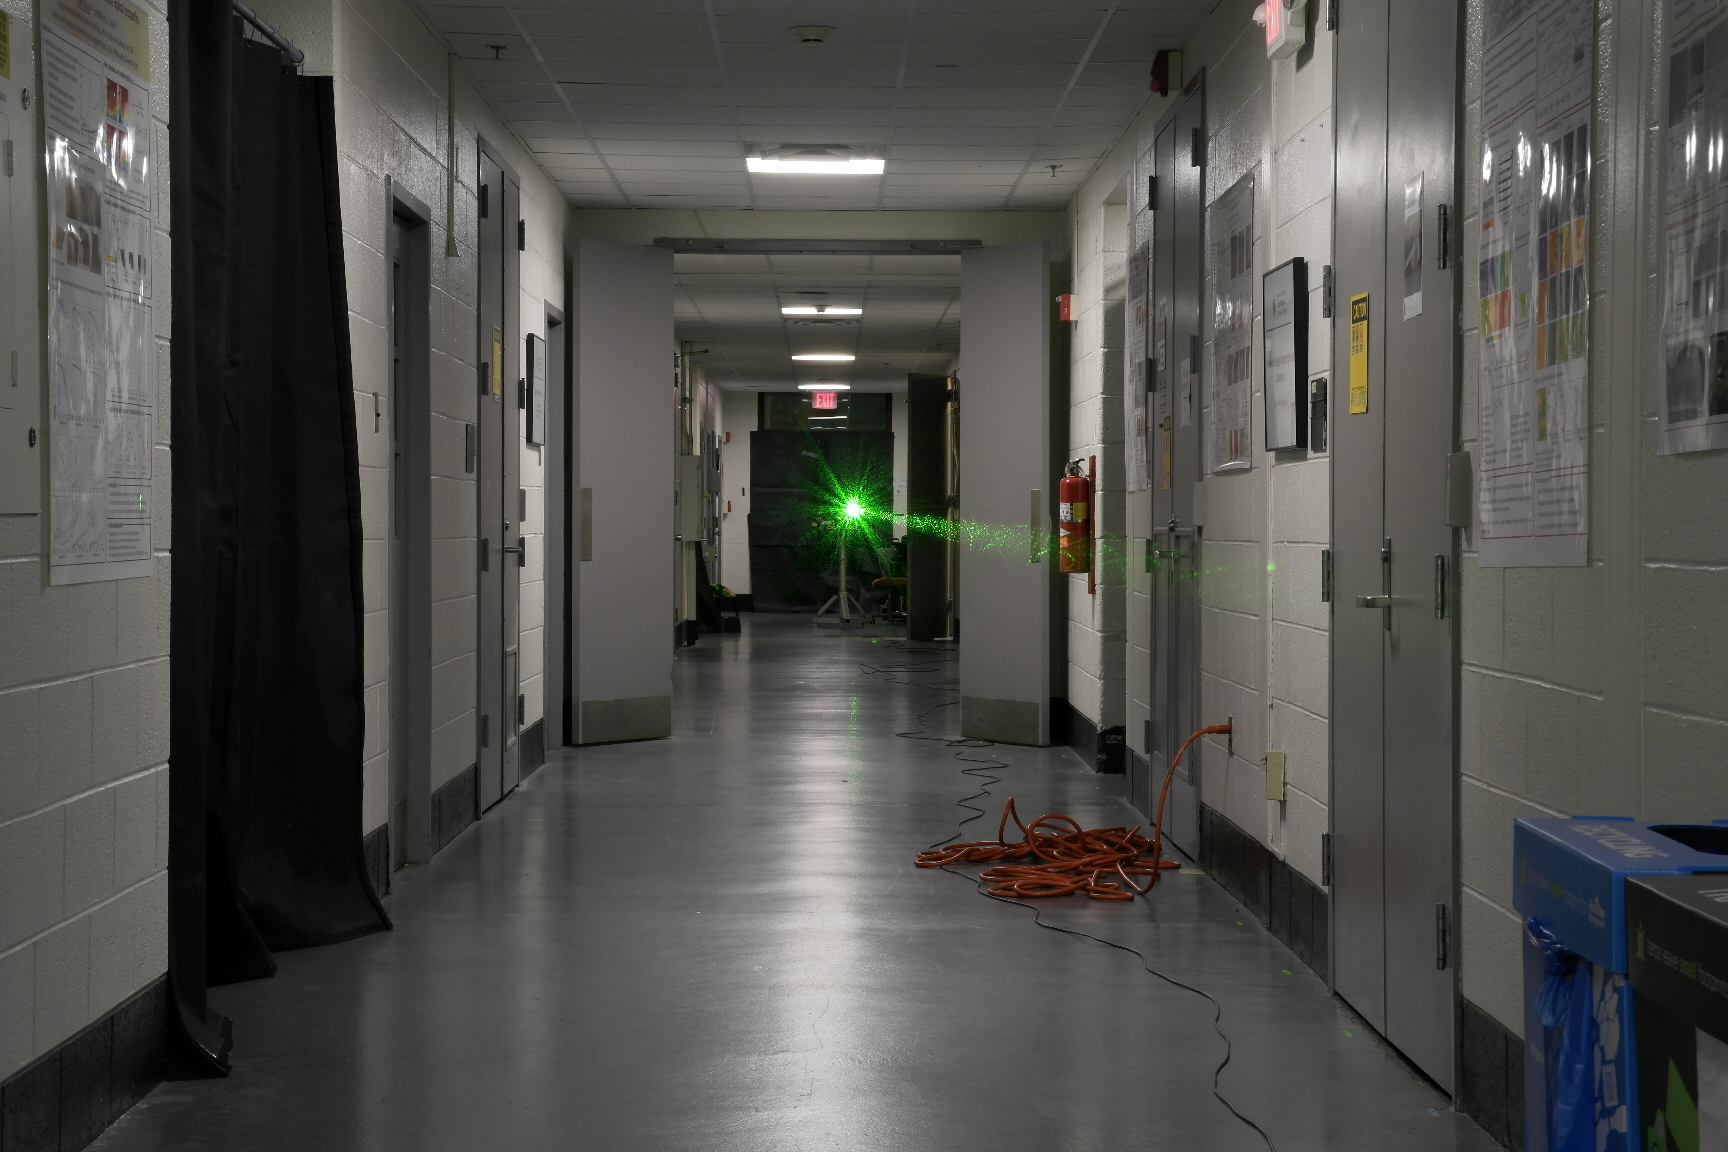 laser in hallway